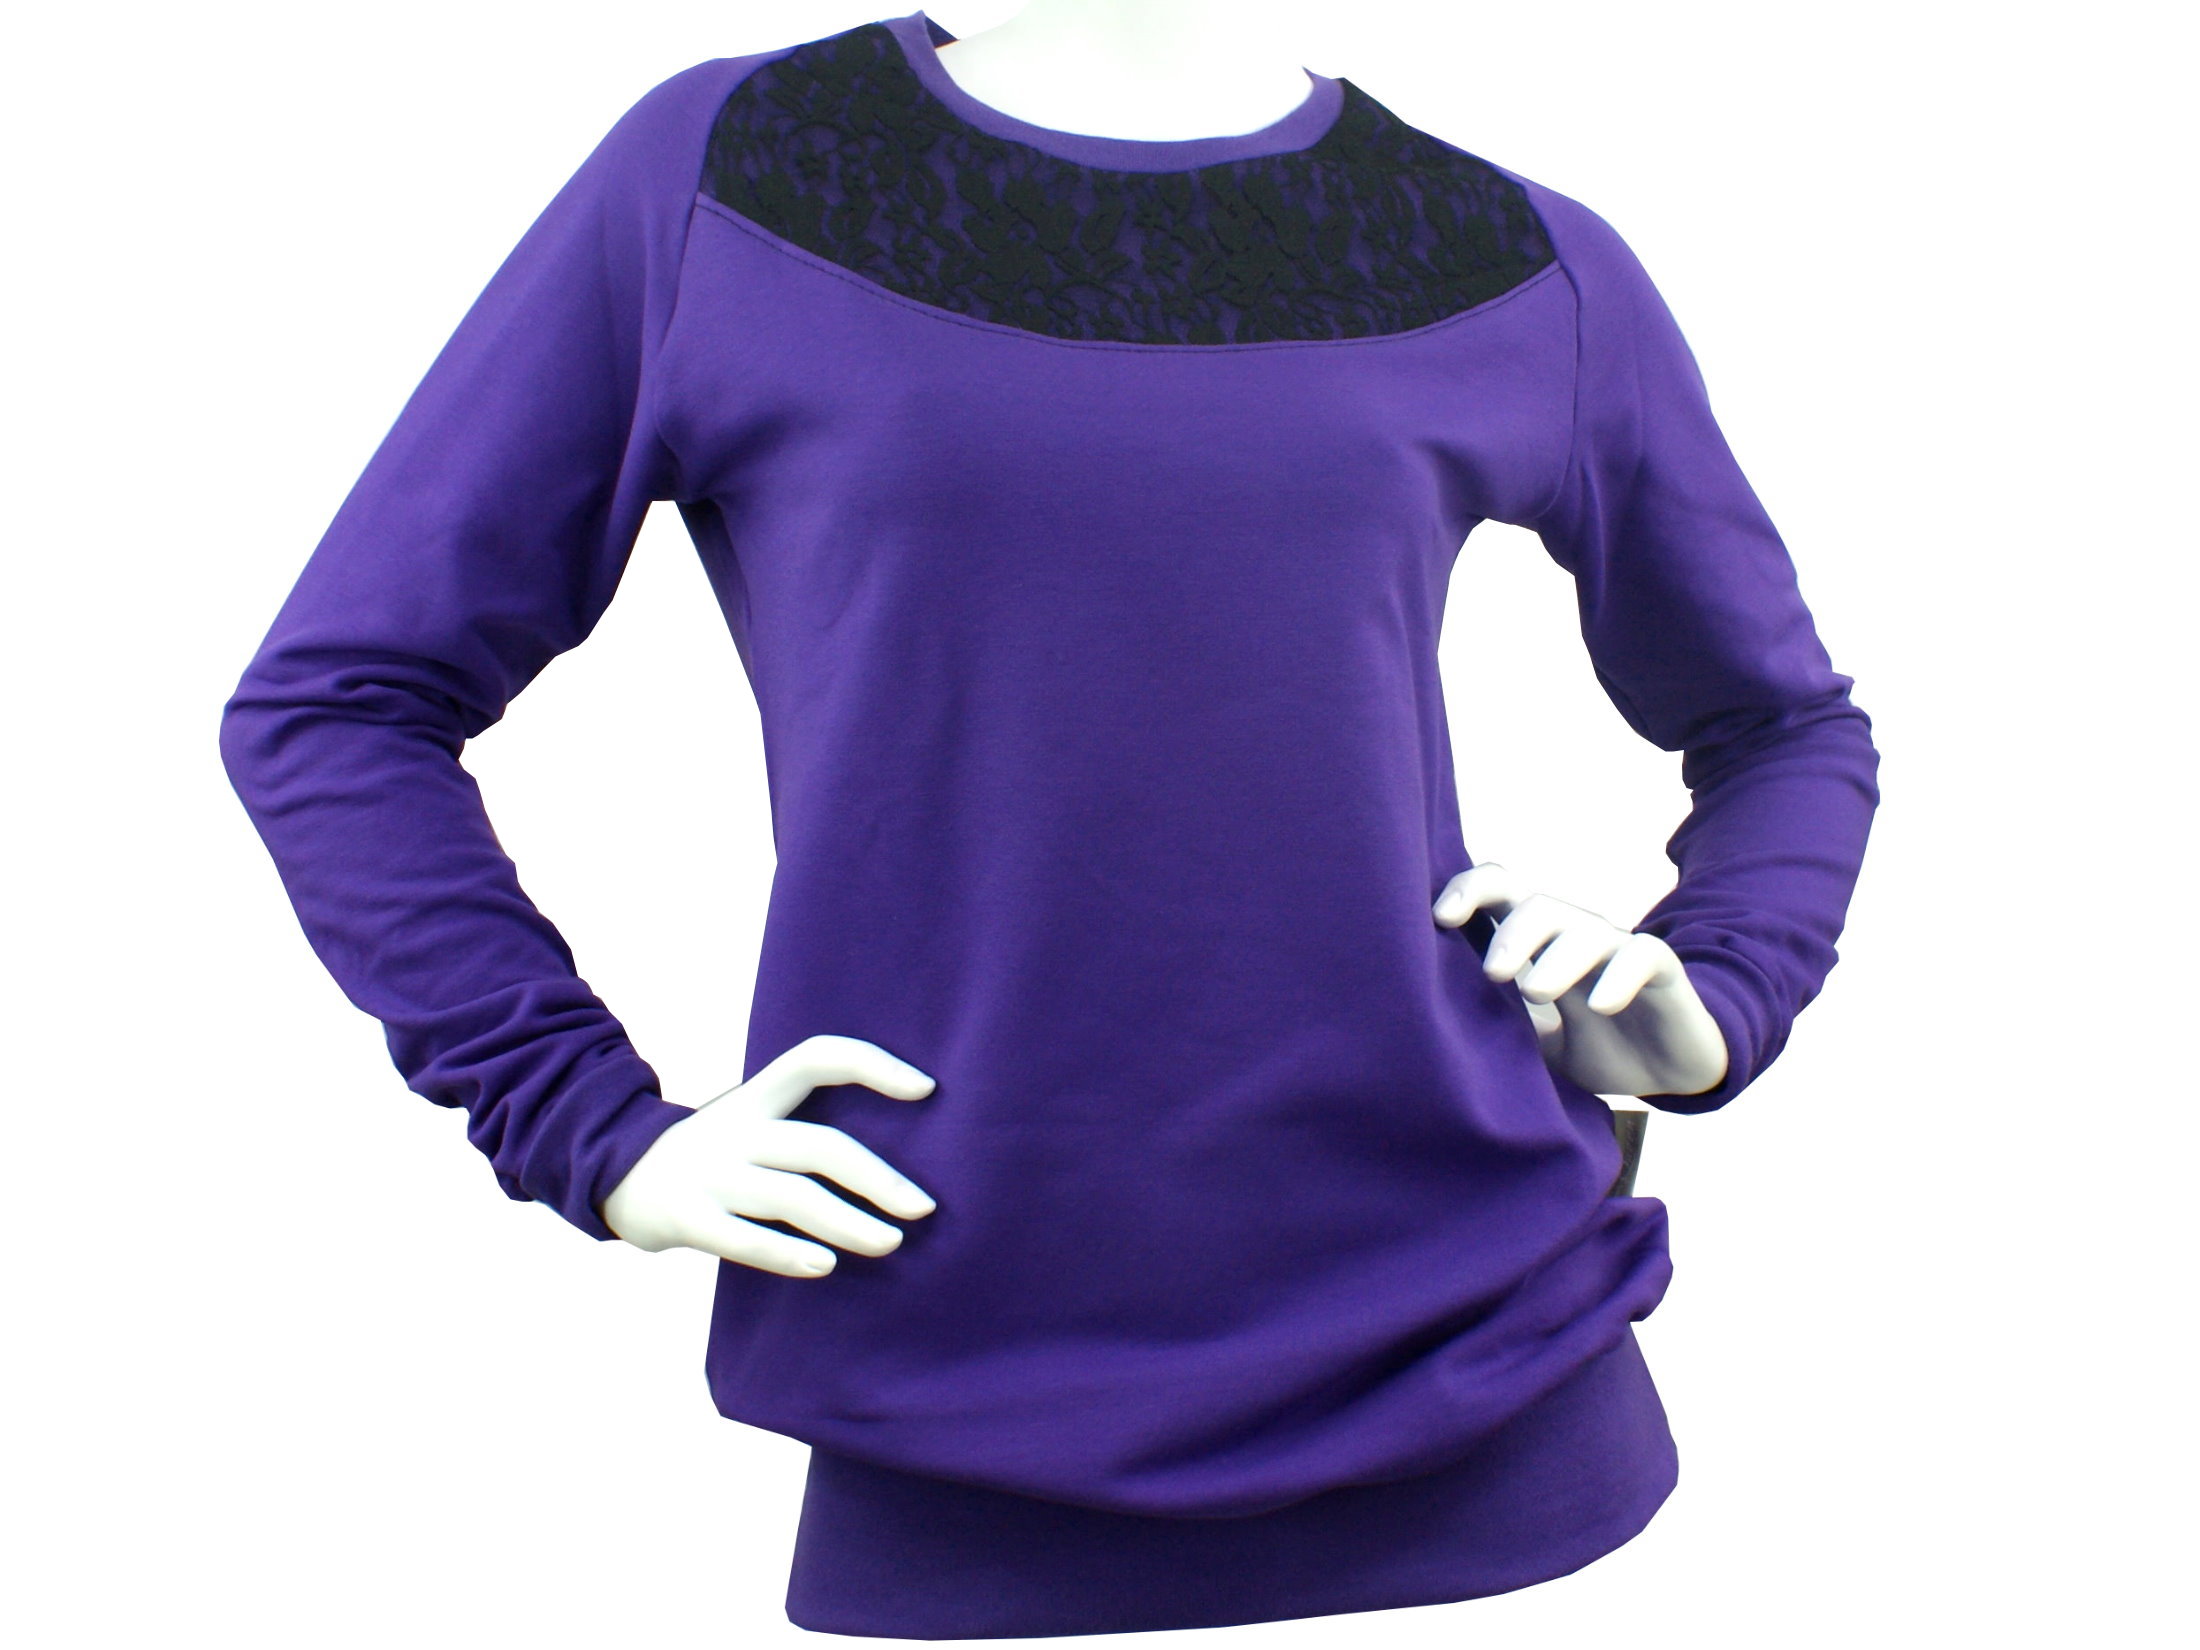 Sweatshirt Pullover "Lace" lila schwarz mit Spitze in 36/38 